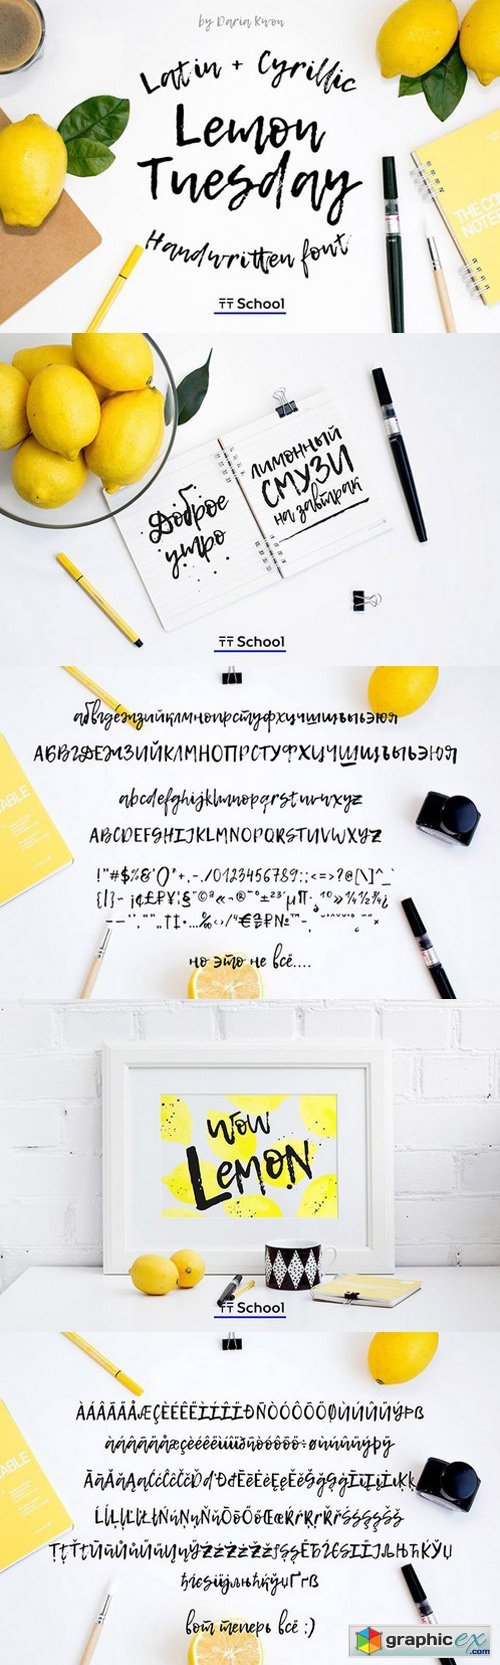 Lemon Tuesday Handwritten Font